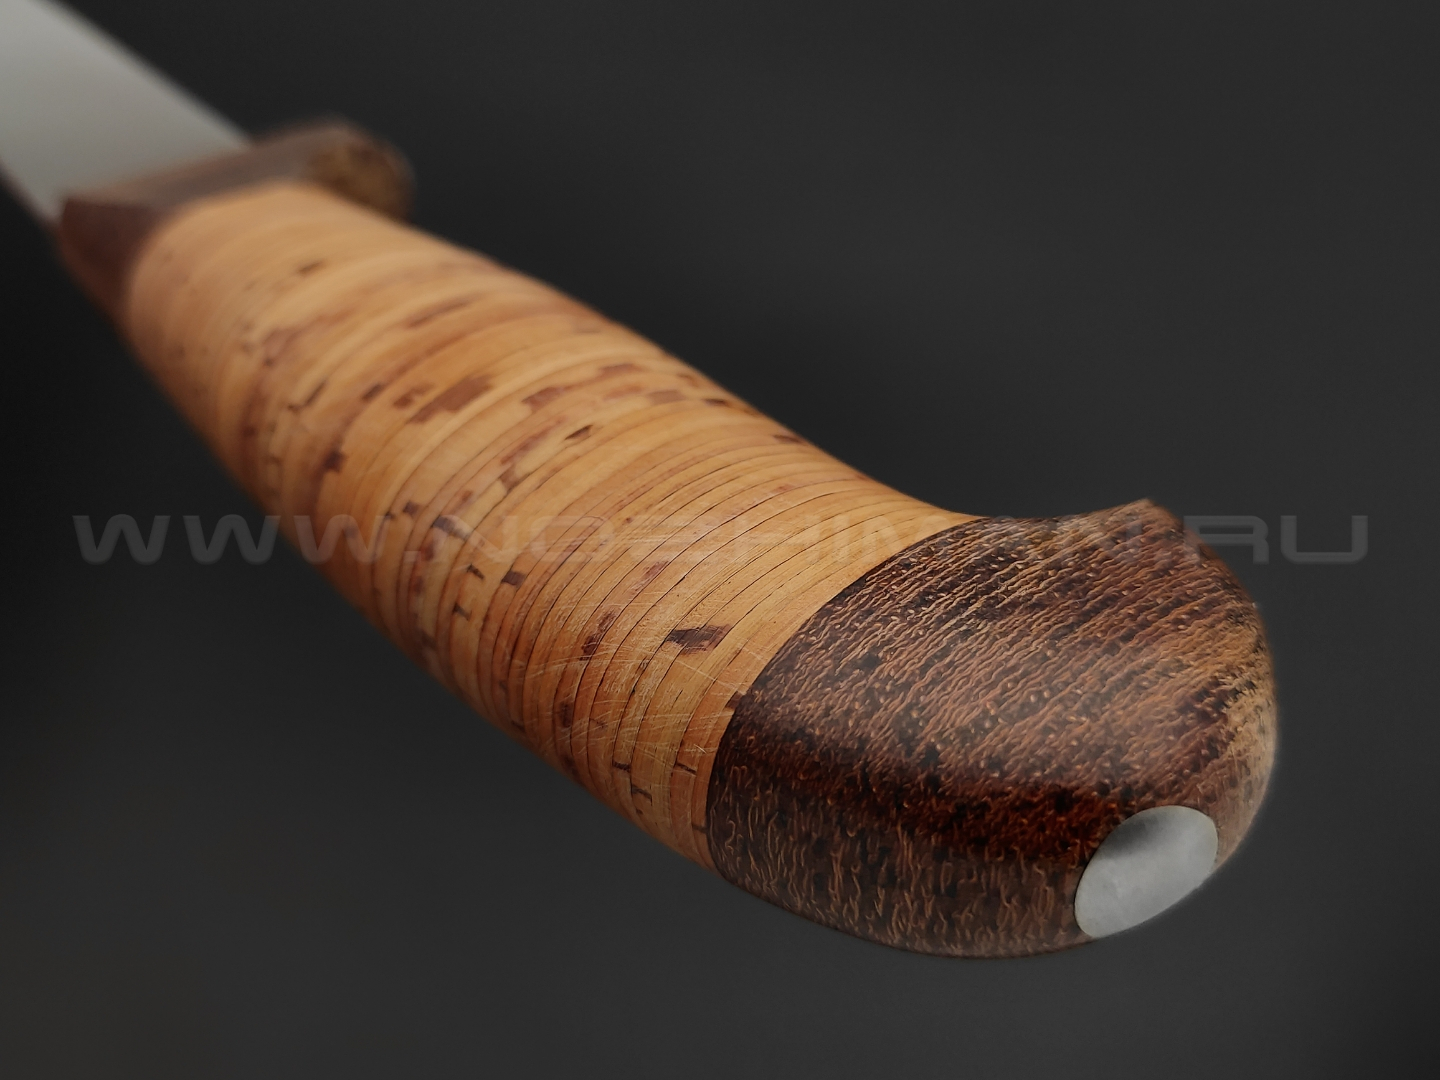 Филейный нож "Смак-3" сталь 95Х18, рукоять наборная береста (Титов & Солдатова)